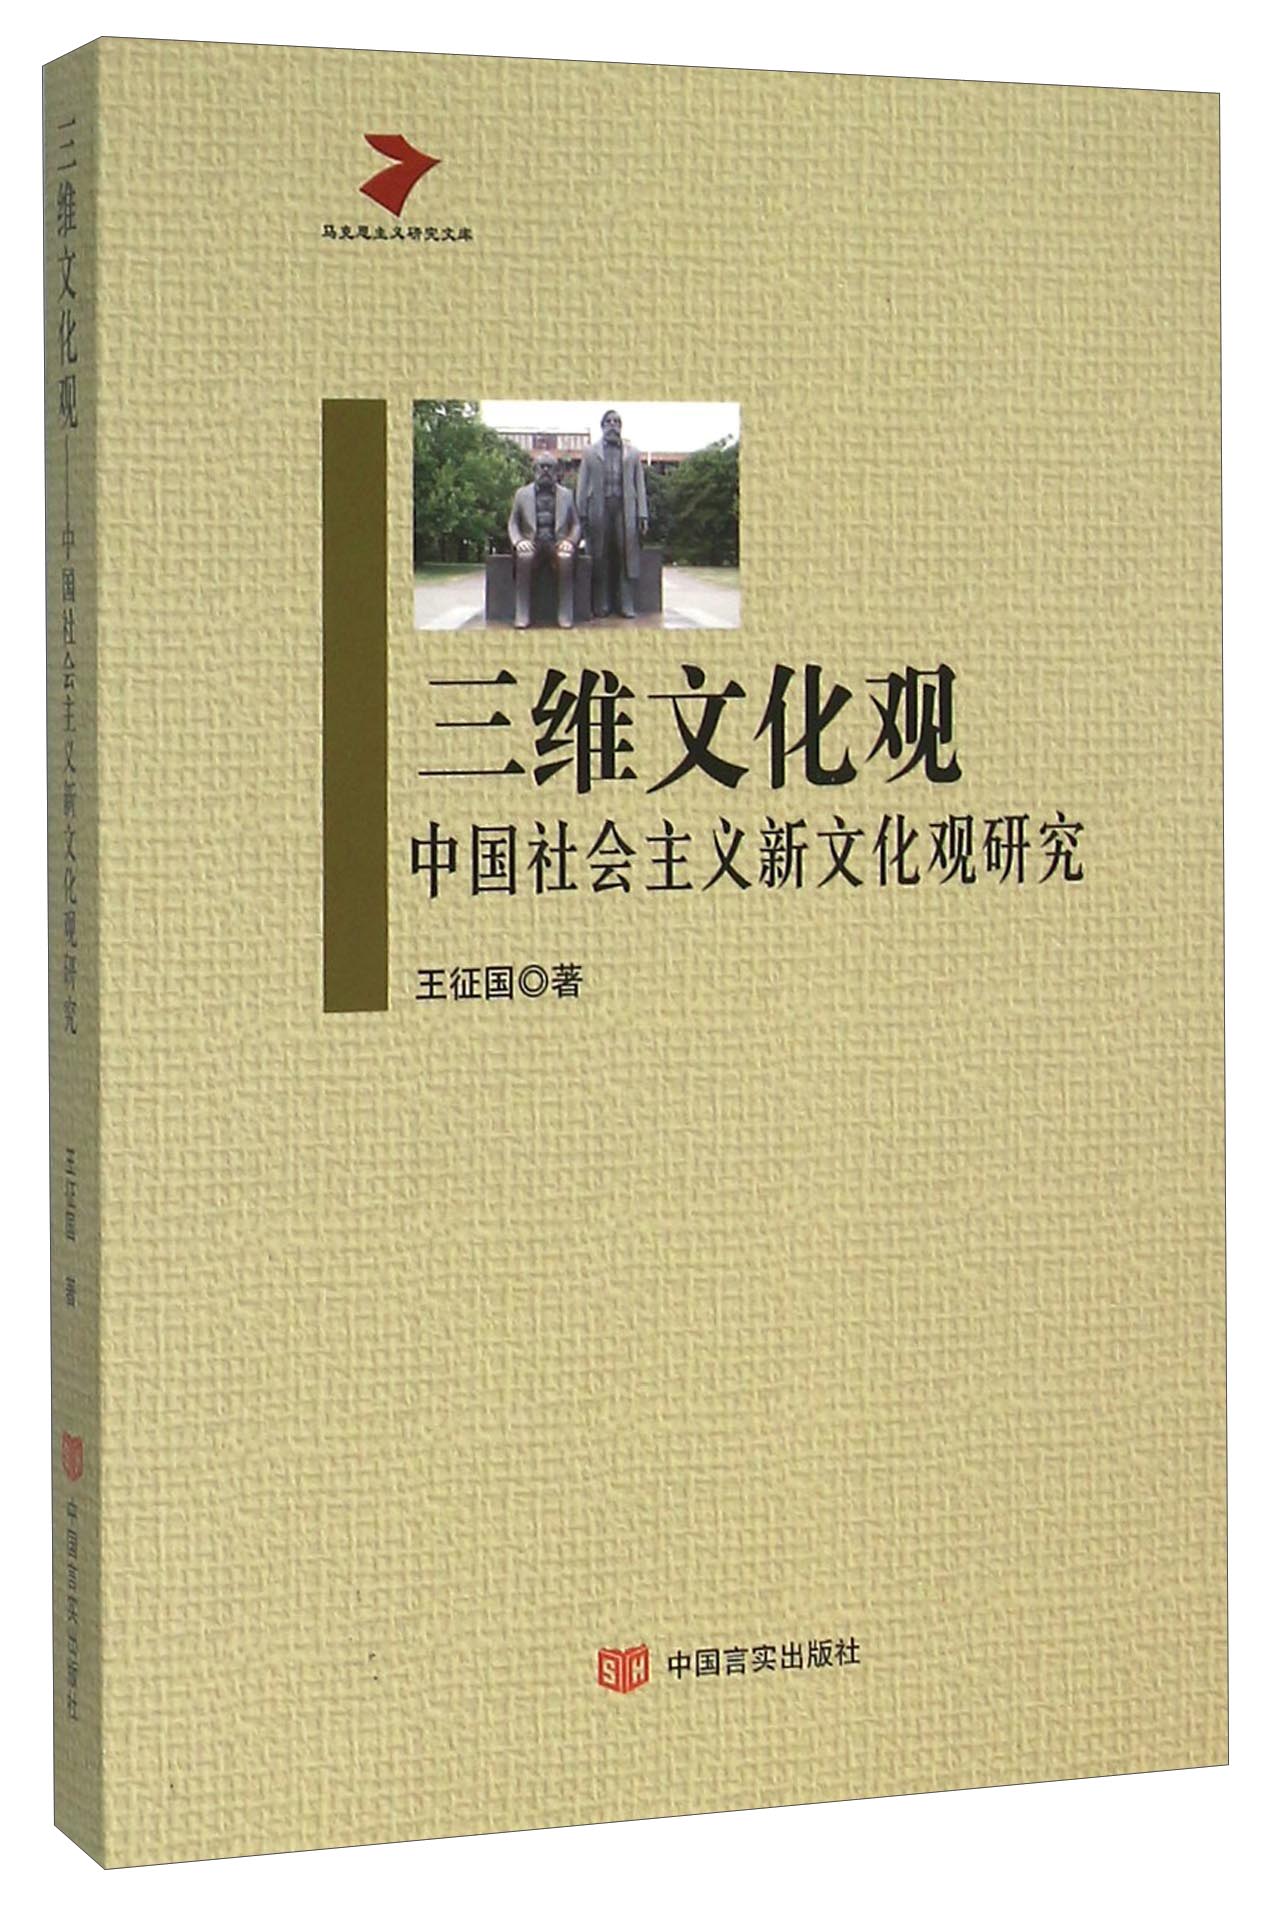 三维文化观 中国社会主义新文化观研究 pdf格式下载